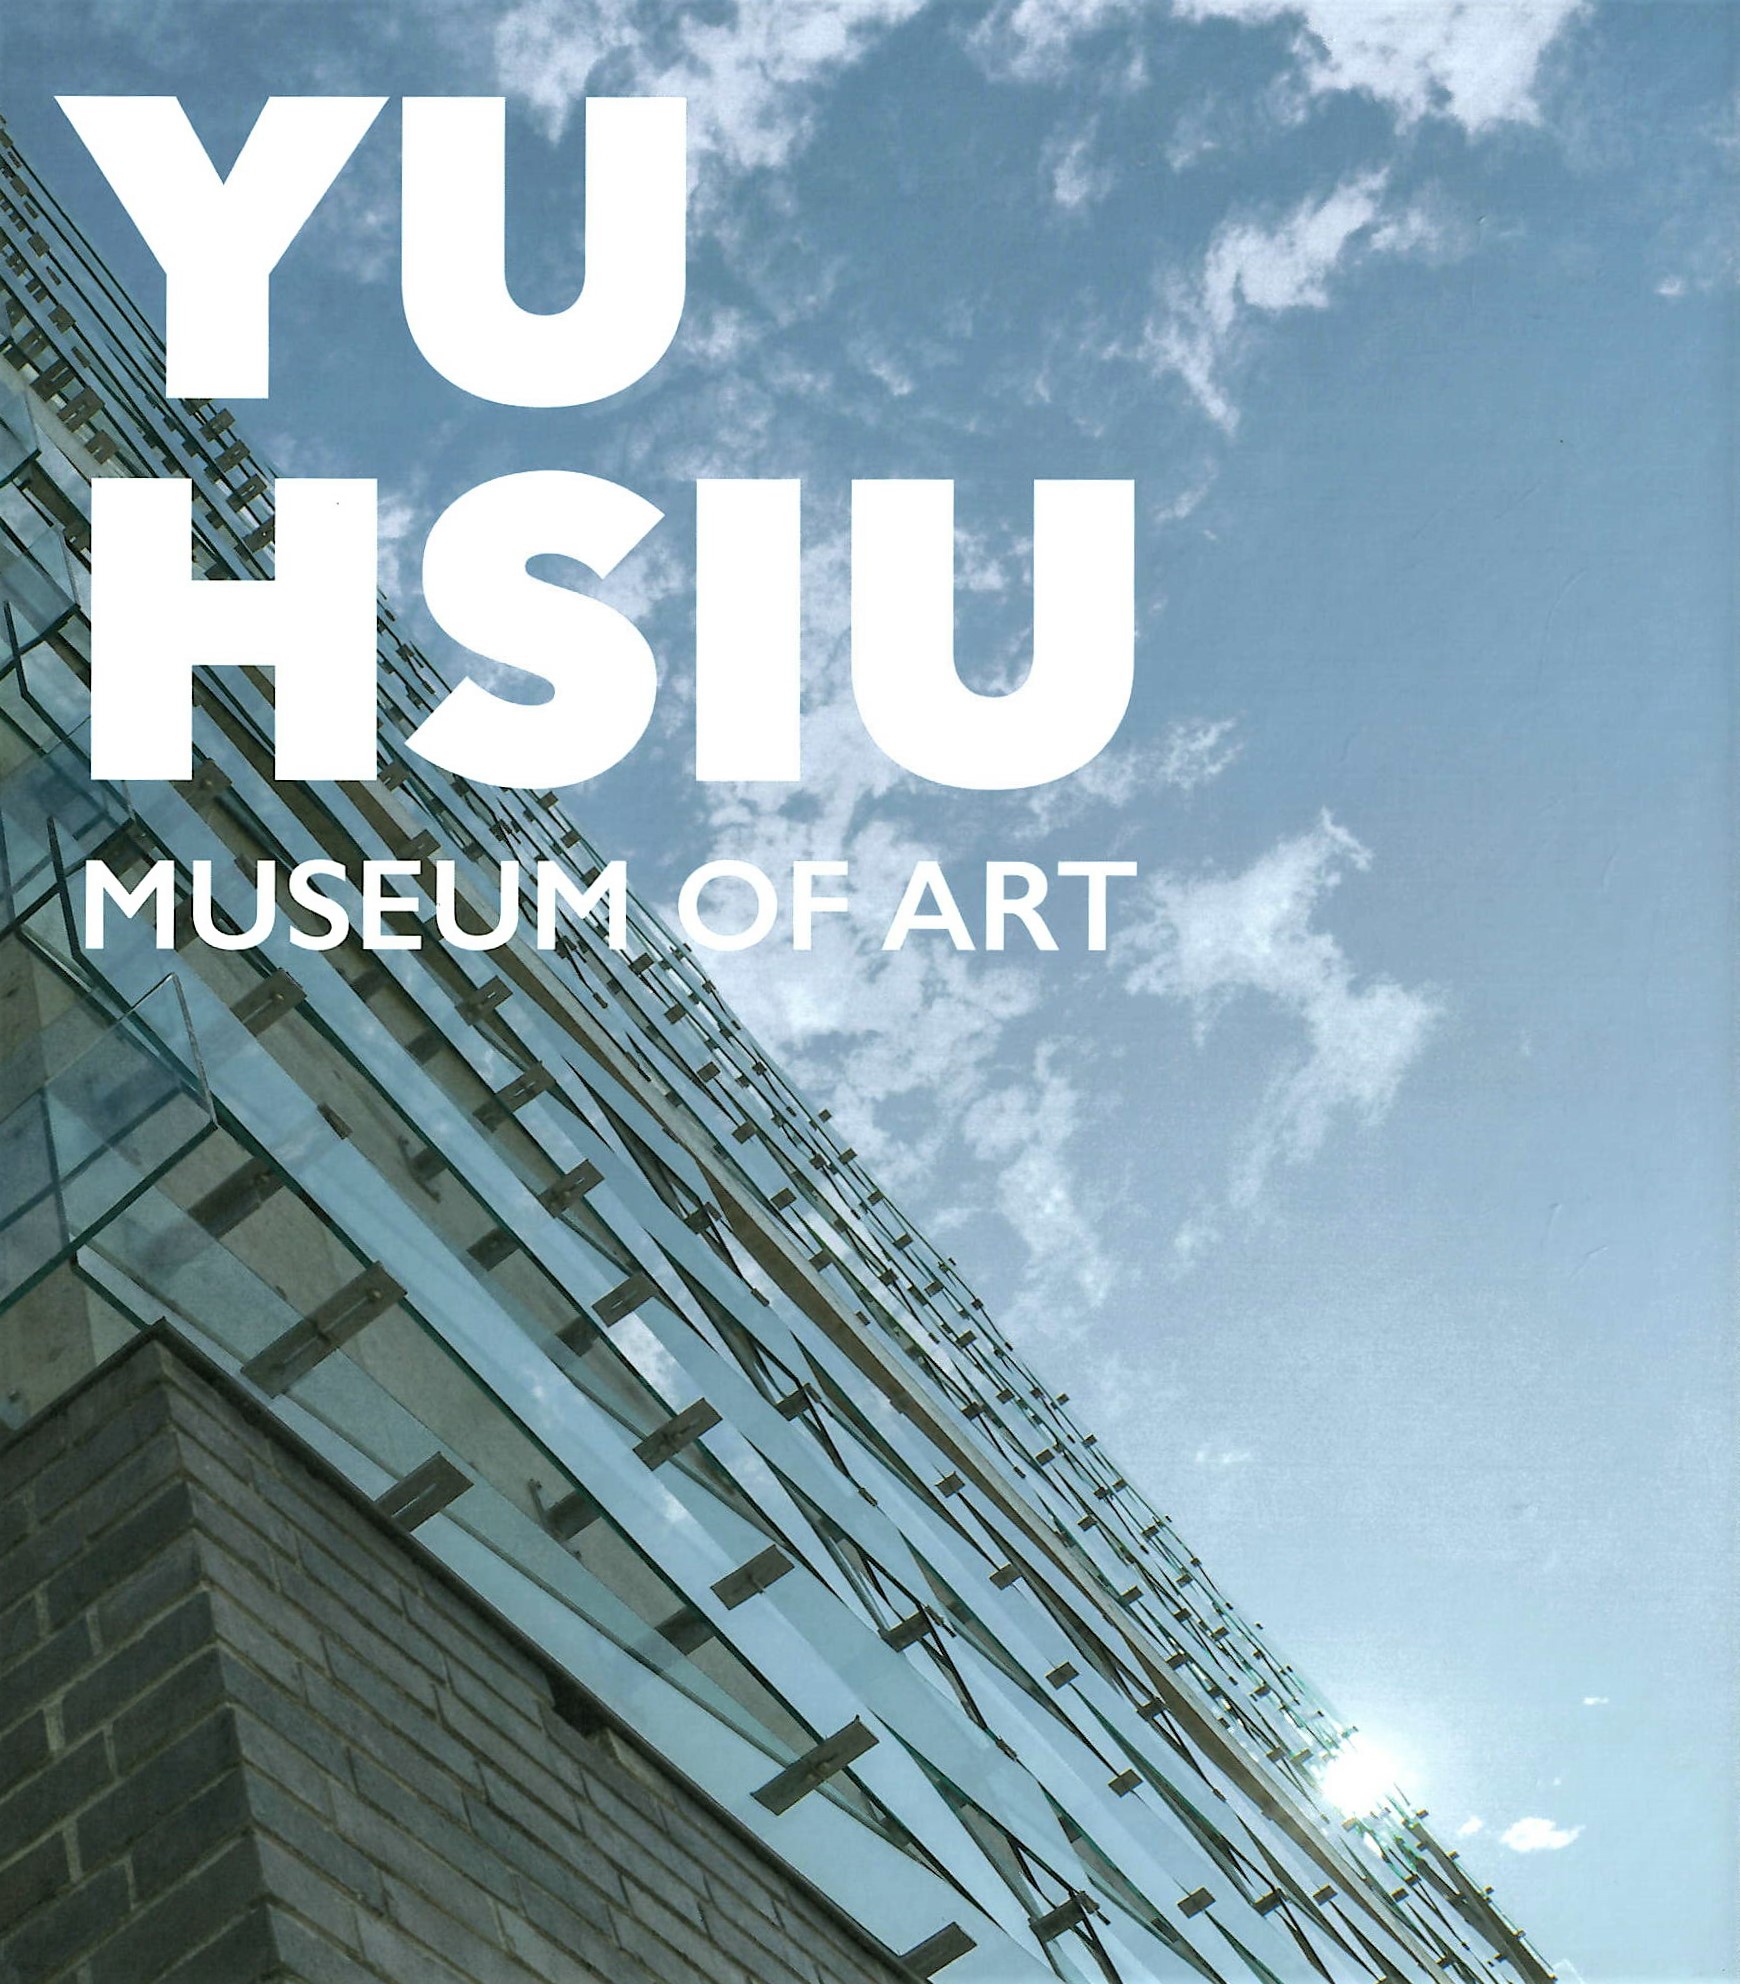 Yu-Hsiu Museum of Art